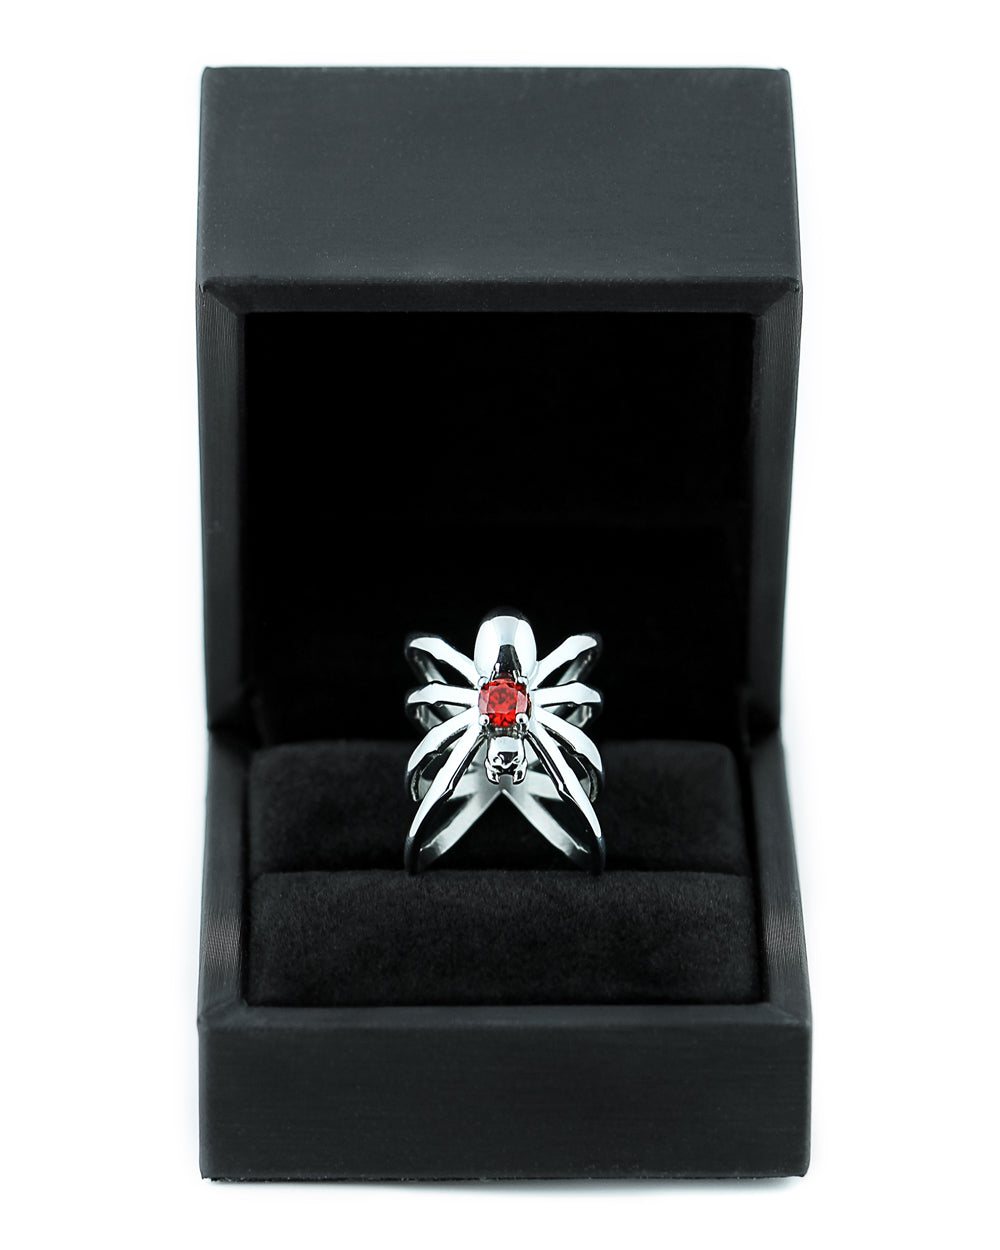 Spiderhug Ring in Mirror Steel